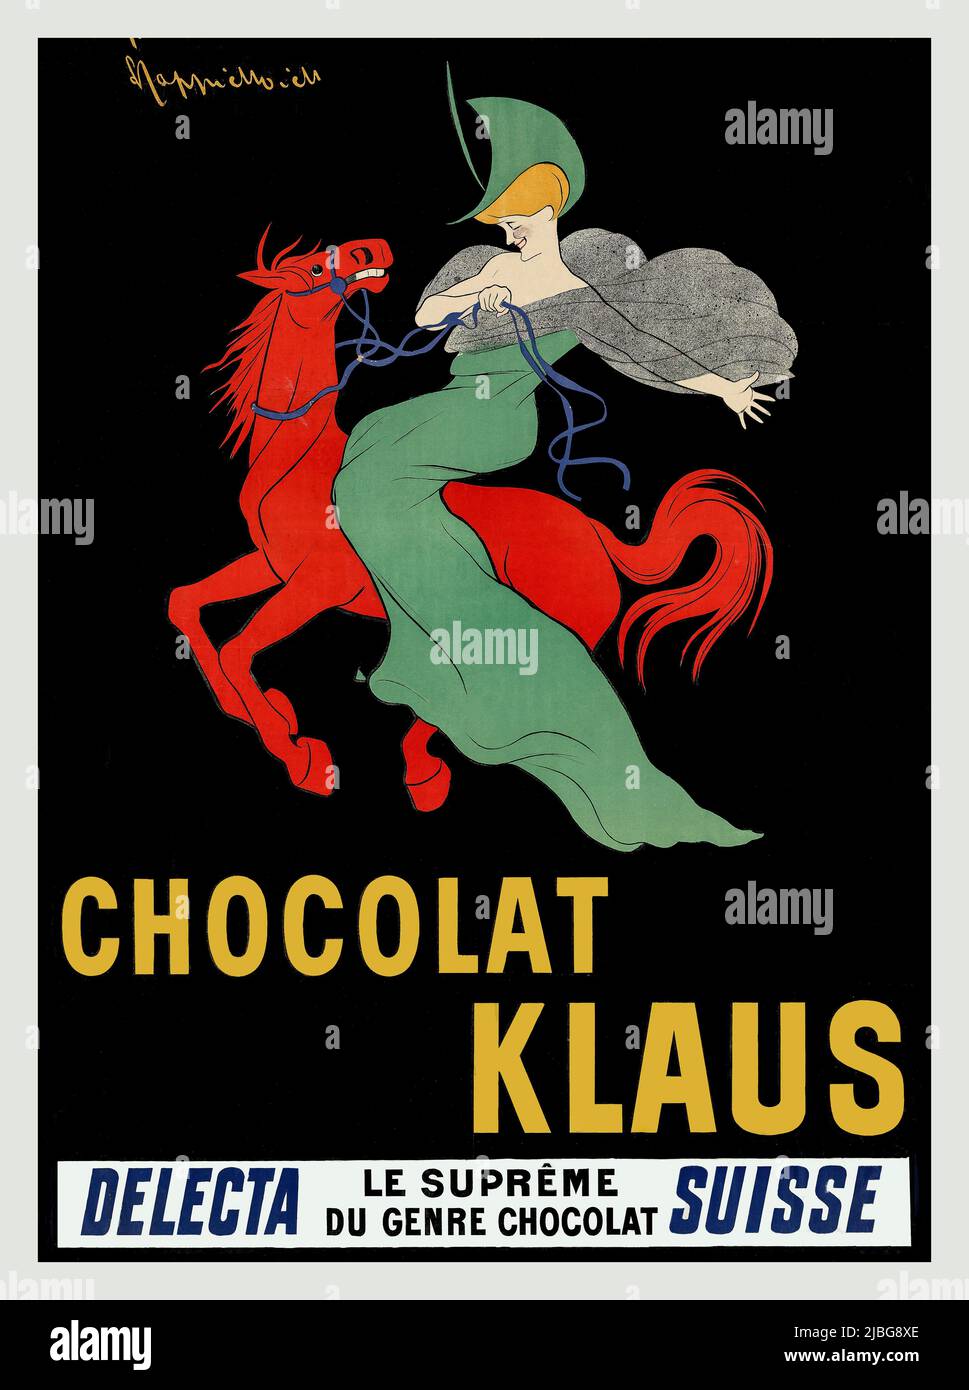 Un tournant du 20th siècle, affiche publicitaire suisse de Leonetto Cappiello (1875-1942), pour Chocolat Klaus dans lequel une femme dans une robe verte est assis à cheval rouge galopant. L'image est restée un logo pour la société suisse de chocolat pendant cinquante ans. Banque D'Images